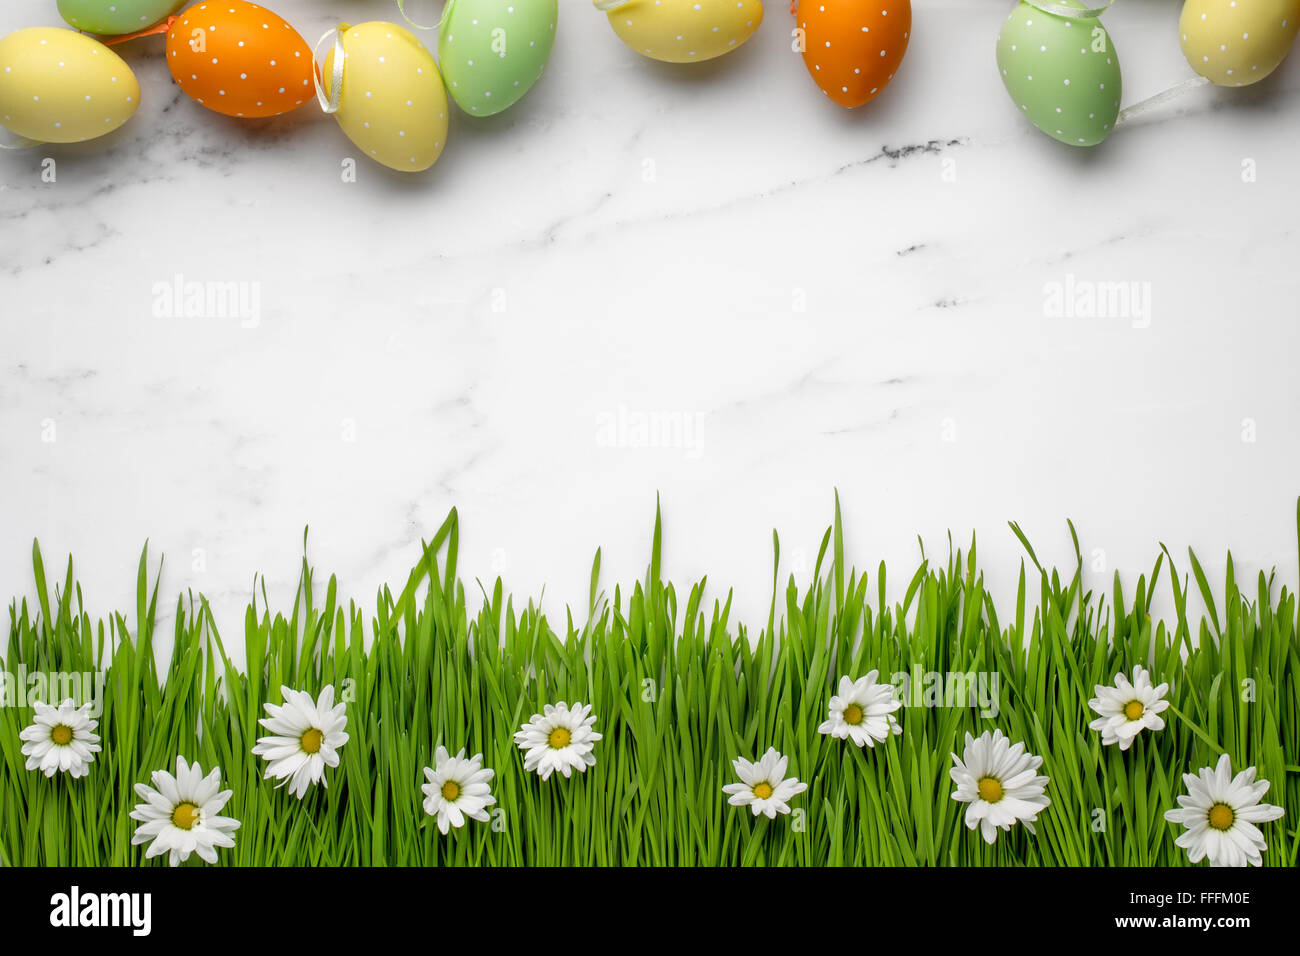 Oeufs de Pâques,herbe verte avec daisy fleur sur fond de marbre Banque D'Images